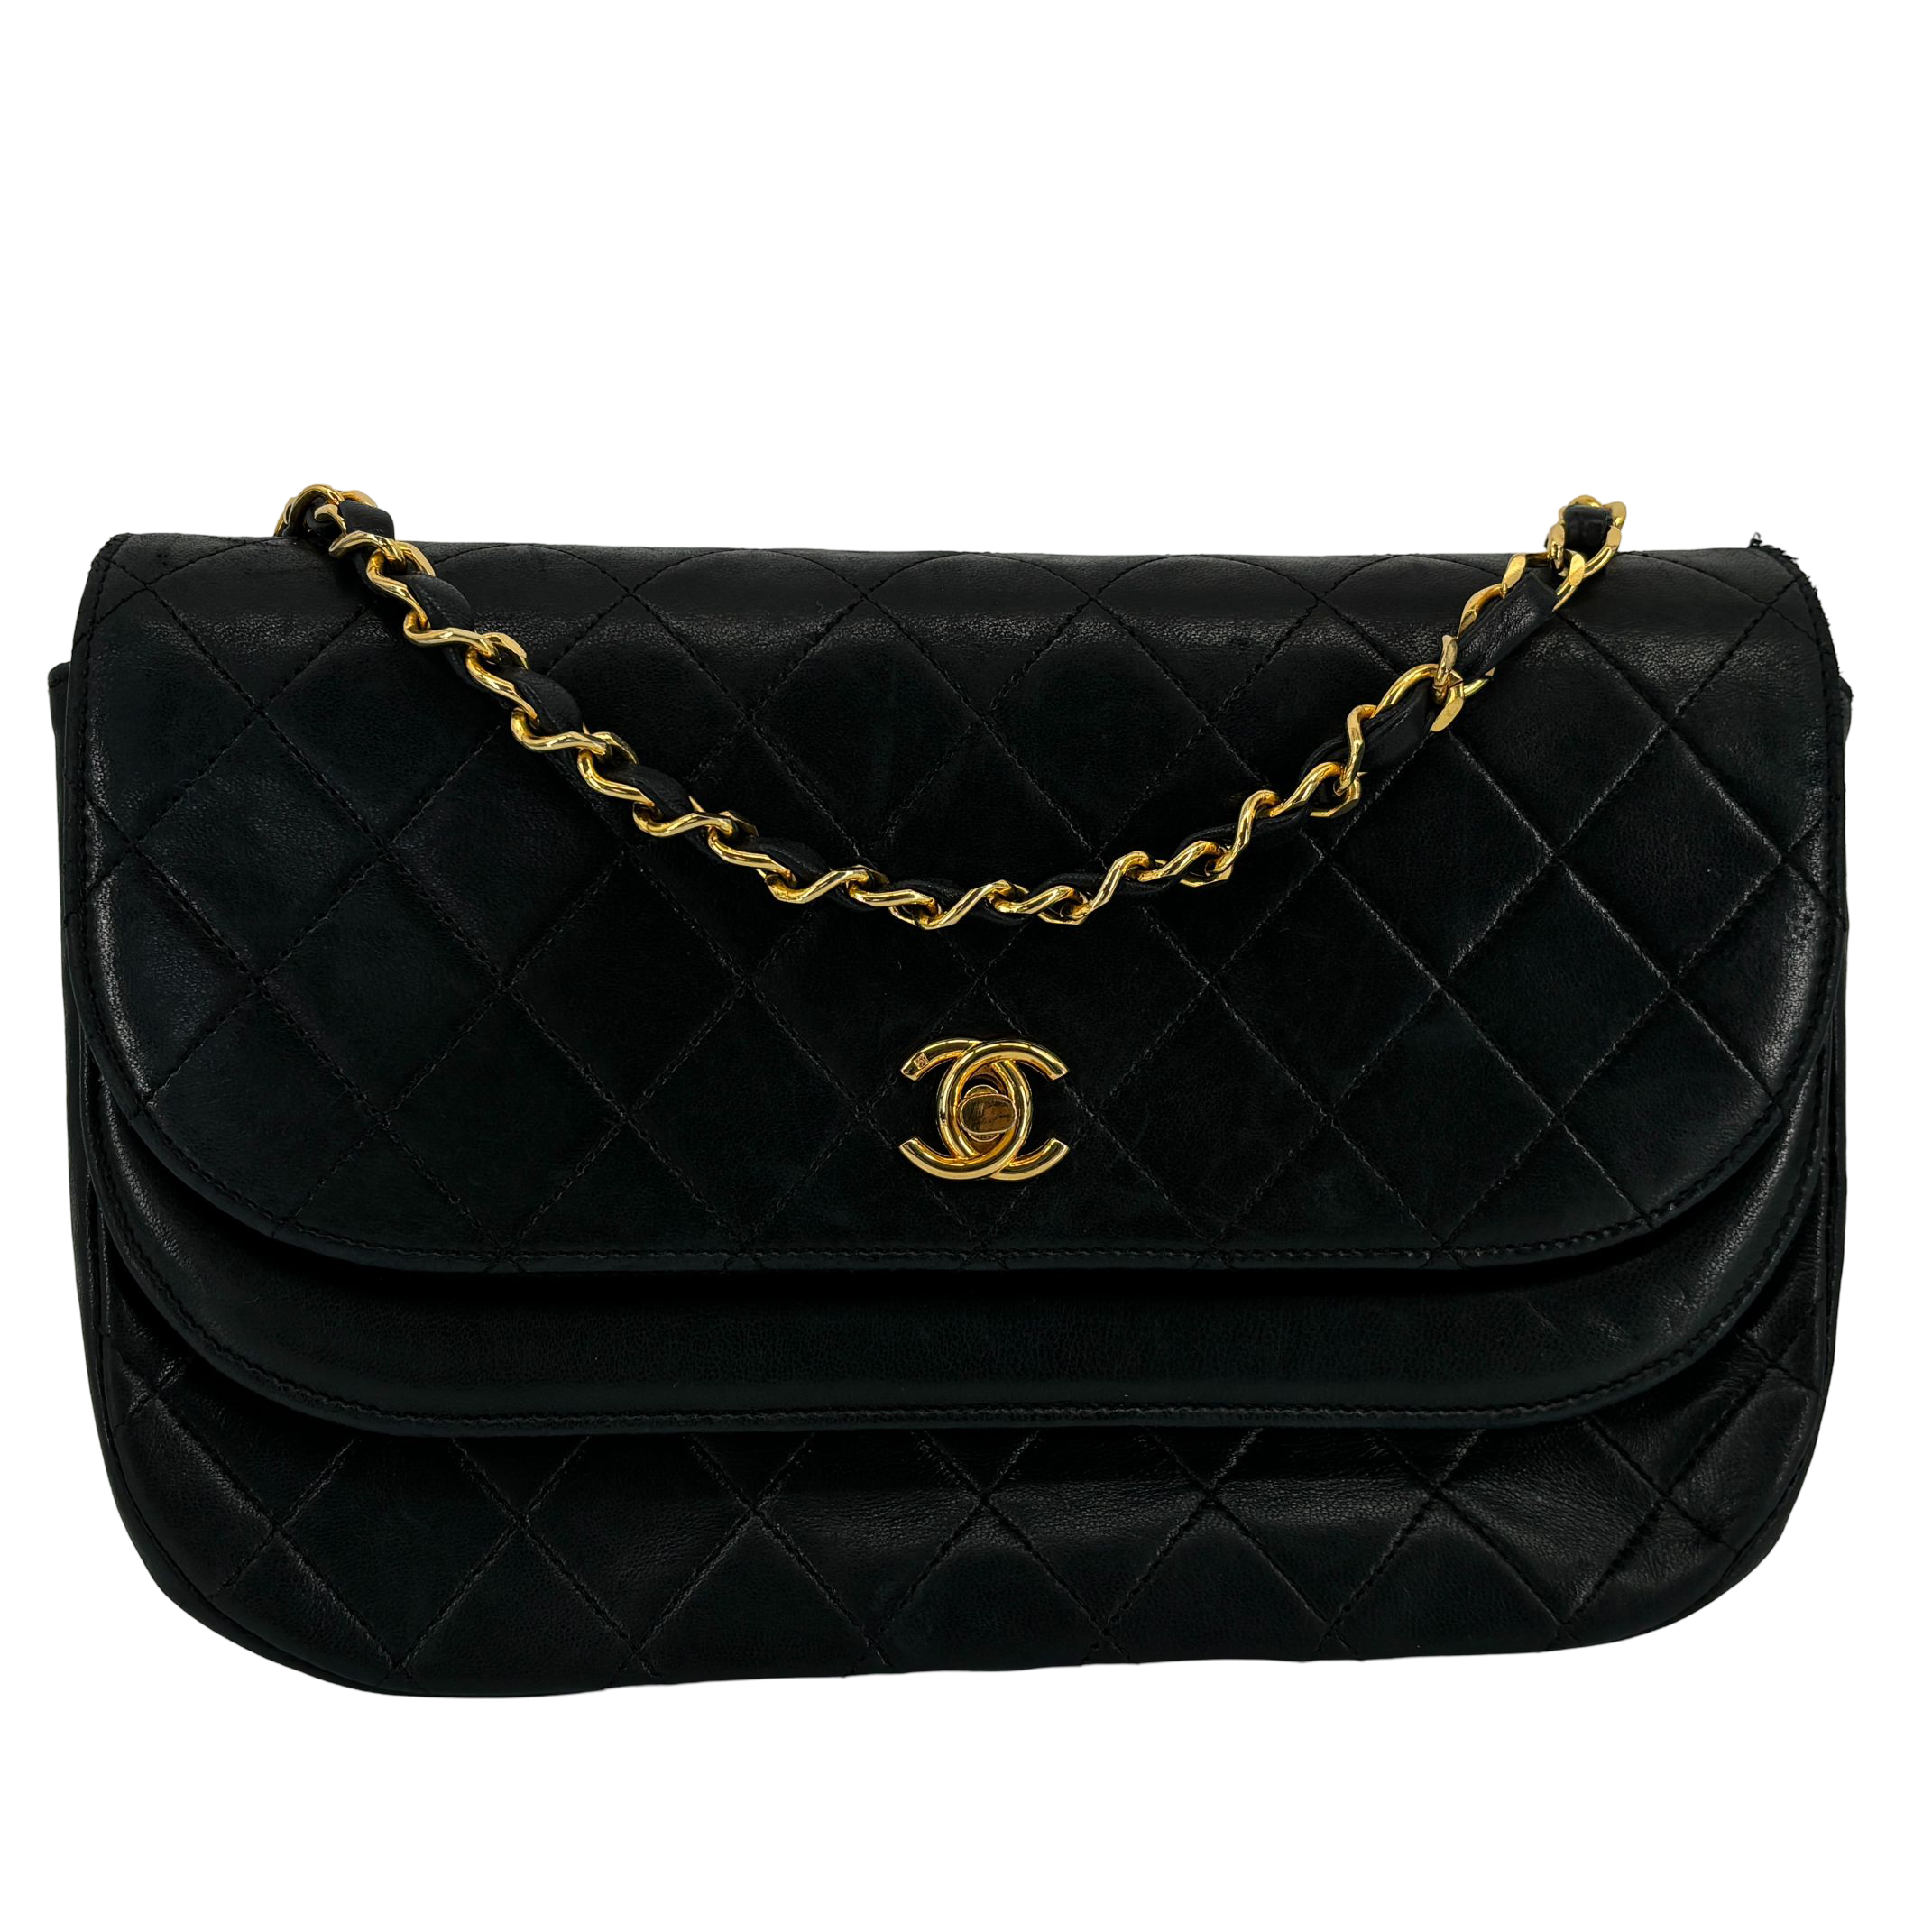 Chanel Half-Moon Double Flap Bag Black Matelassé Leather